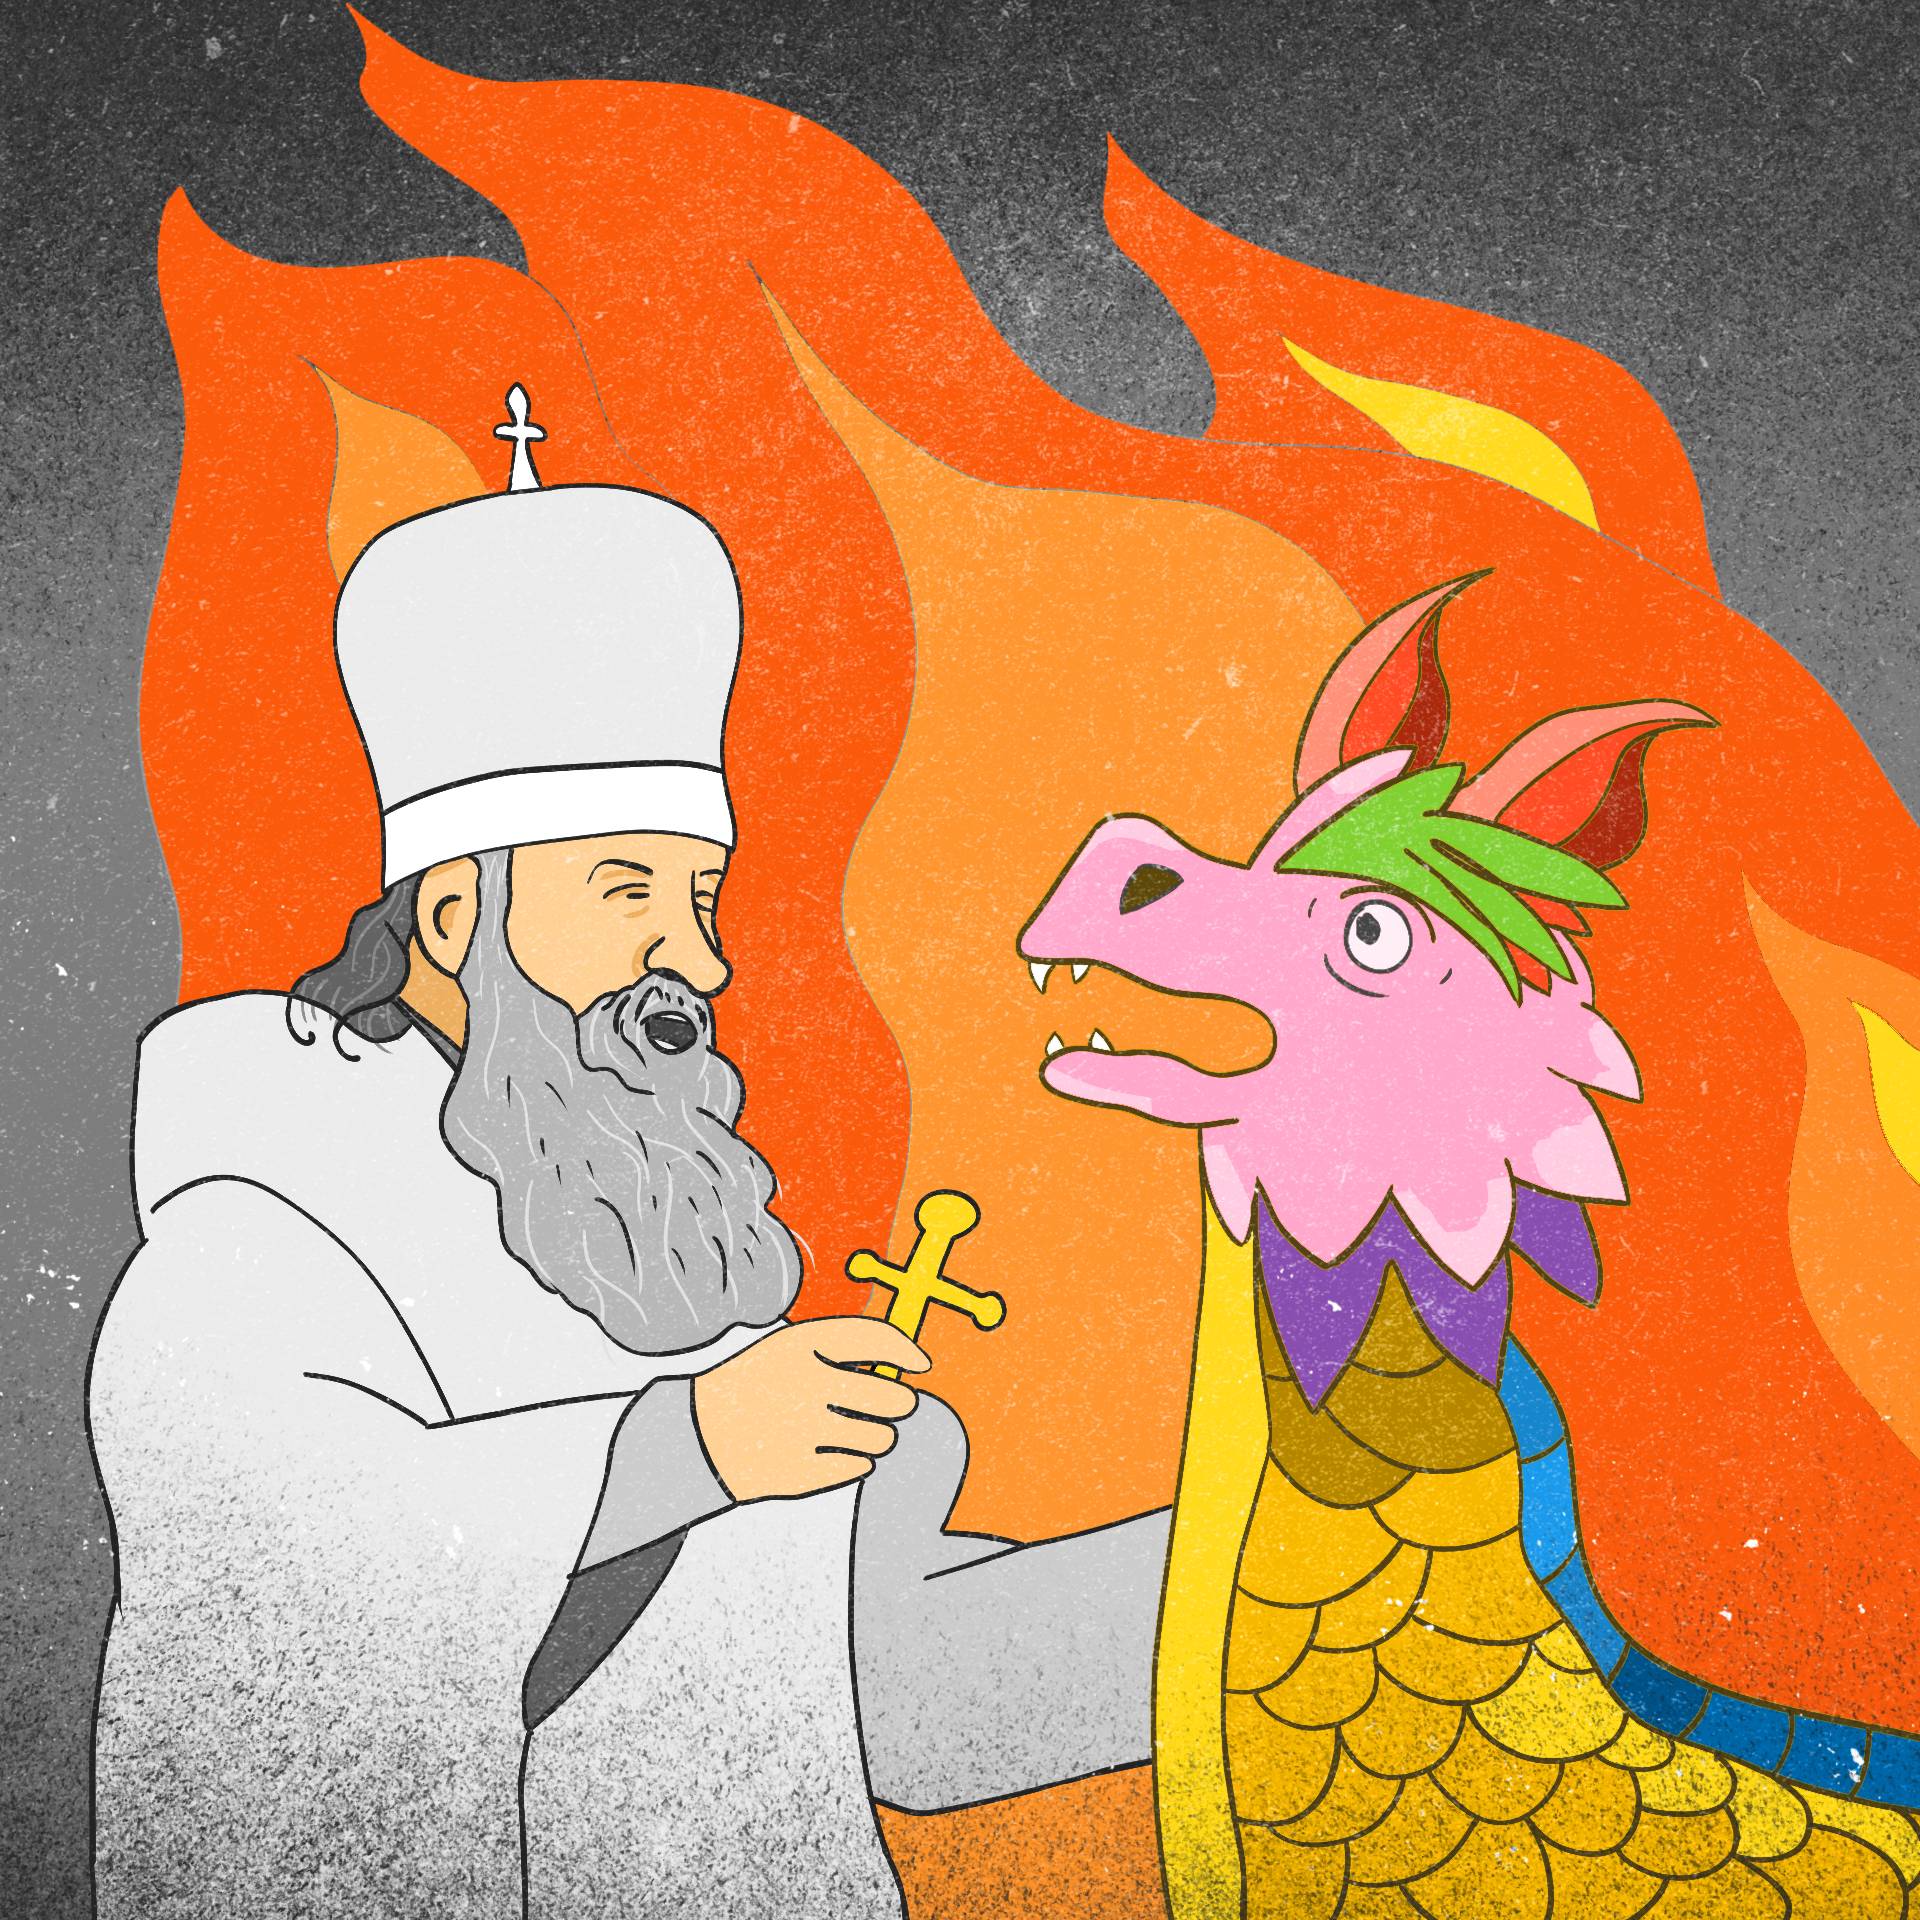 Patriarcha Cyryl I wymachuje krzyżem przed kolorowym, zdziwionym smokiem, w tle płomienie